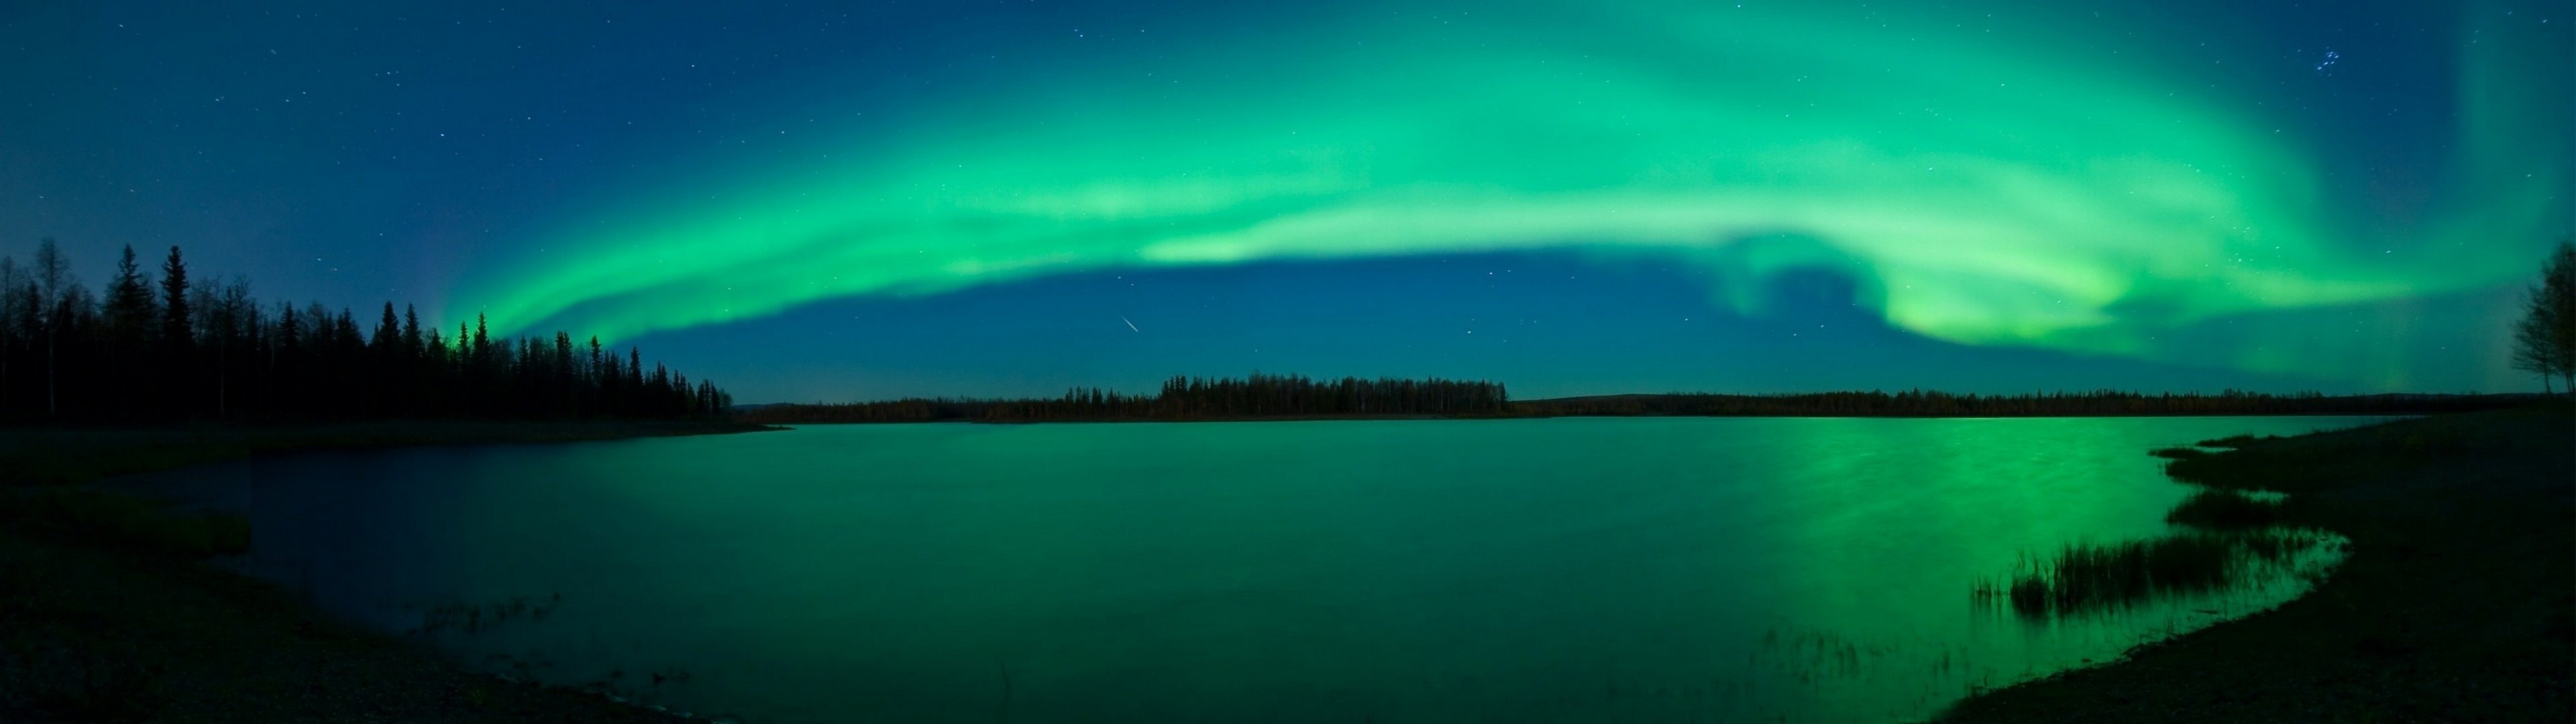 Wallpapers aurora borealis lakes on the desktop